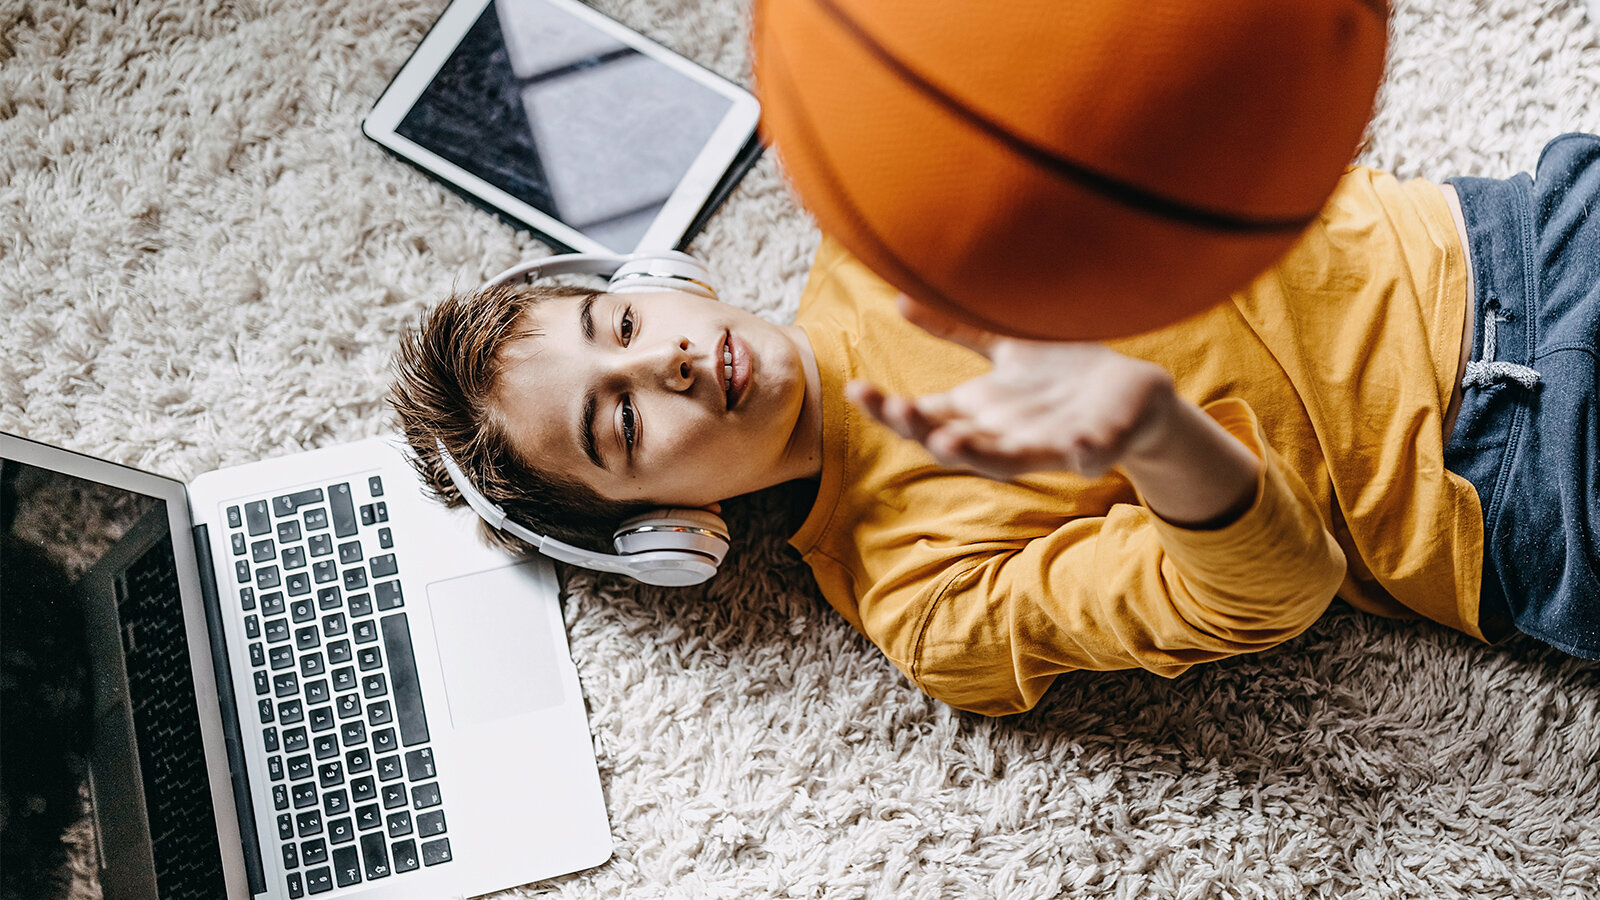 Junge mit Kopfhörern liegt auf einem Teppich und wirft einen Basketball in die Luft